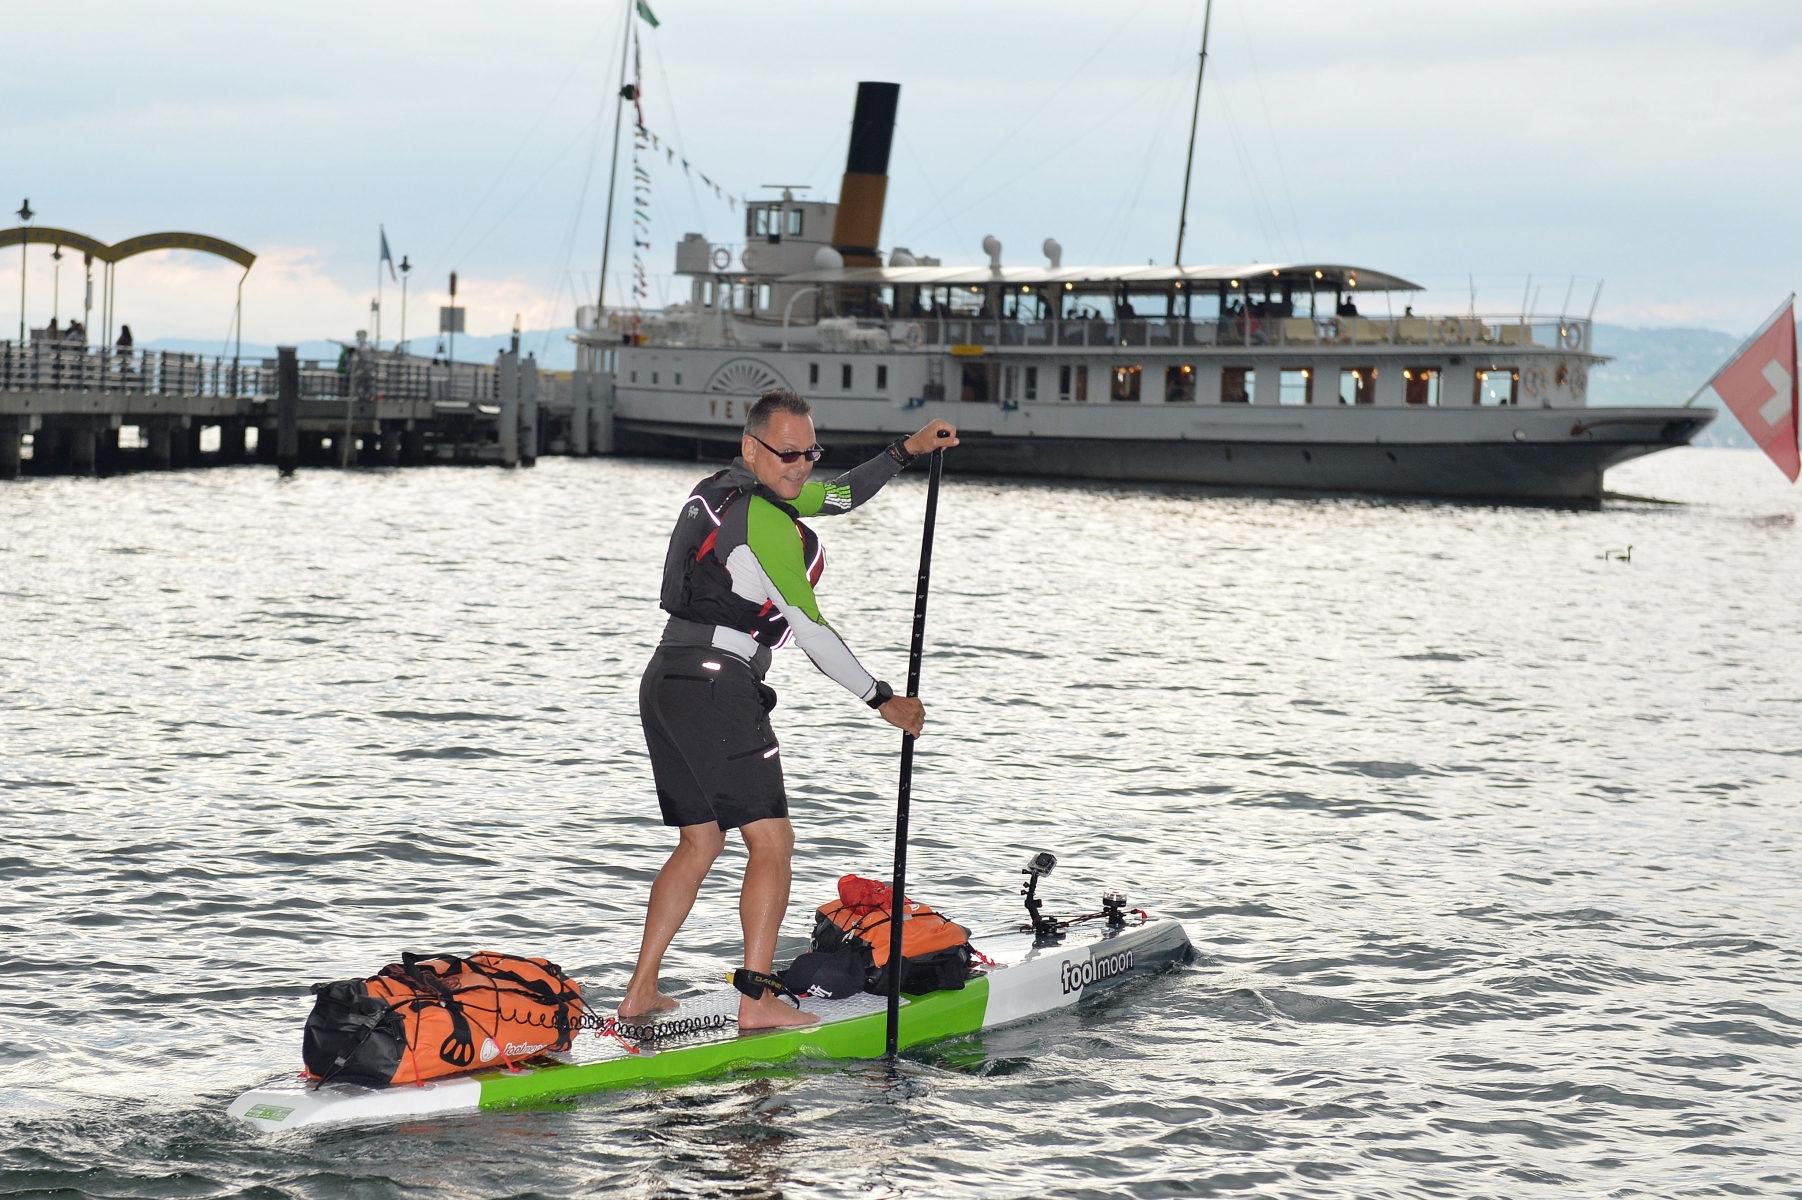 Départ du Road Trip de 650 km en paddle sur le lac et le rhÙne no plastic in water afin de soutenir l'association Safe for Environment Bouveret



Le 31.07.2016

Daniel Clerc